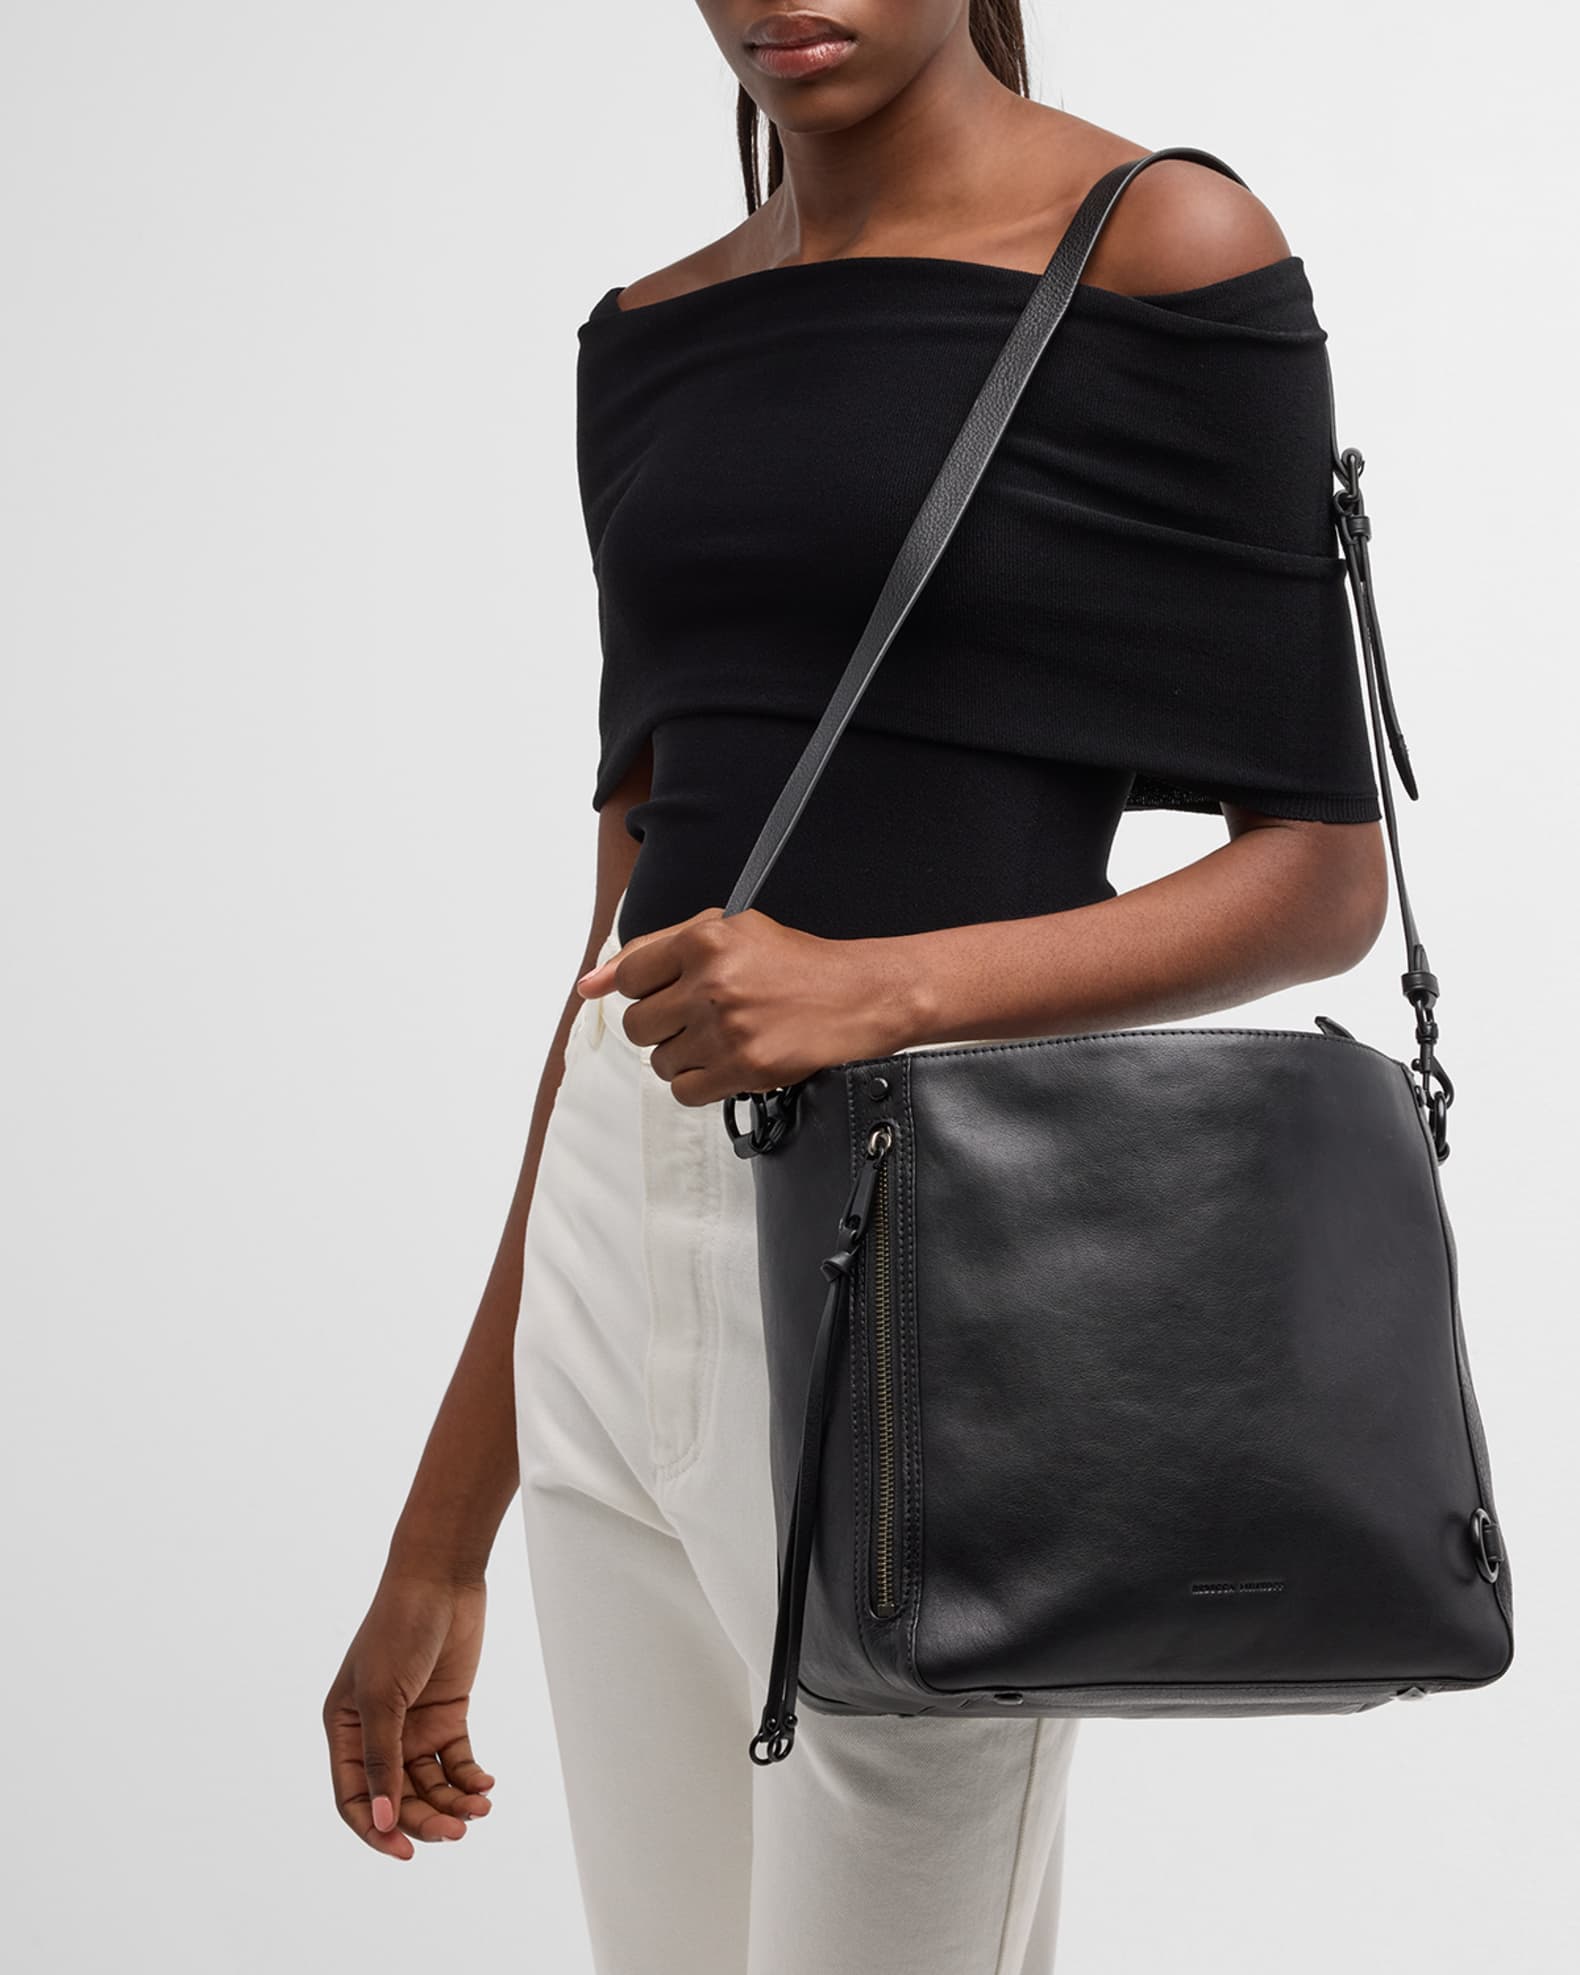 Rebecca Minkoff Mab Leather Hobo Bag | Neiman Marcus